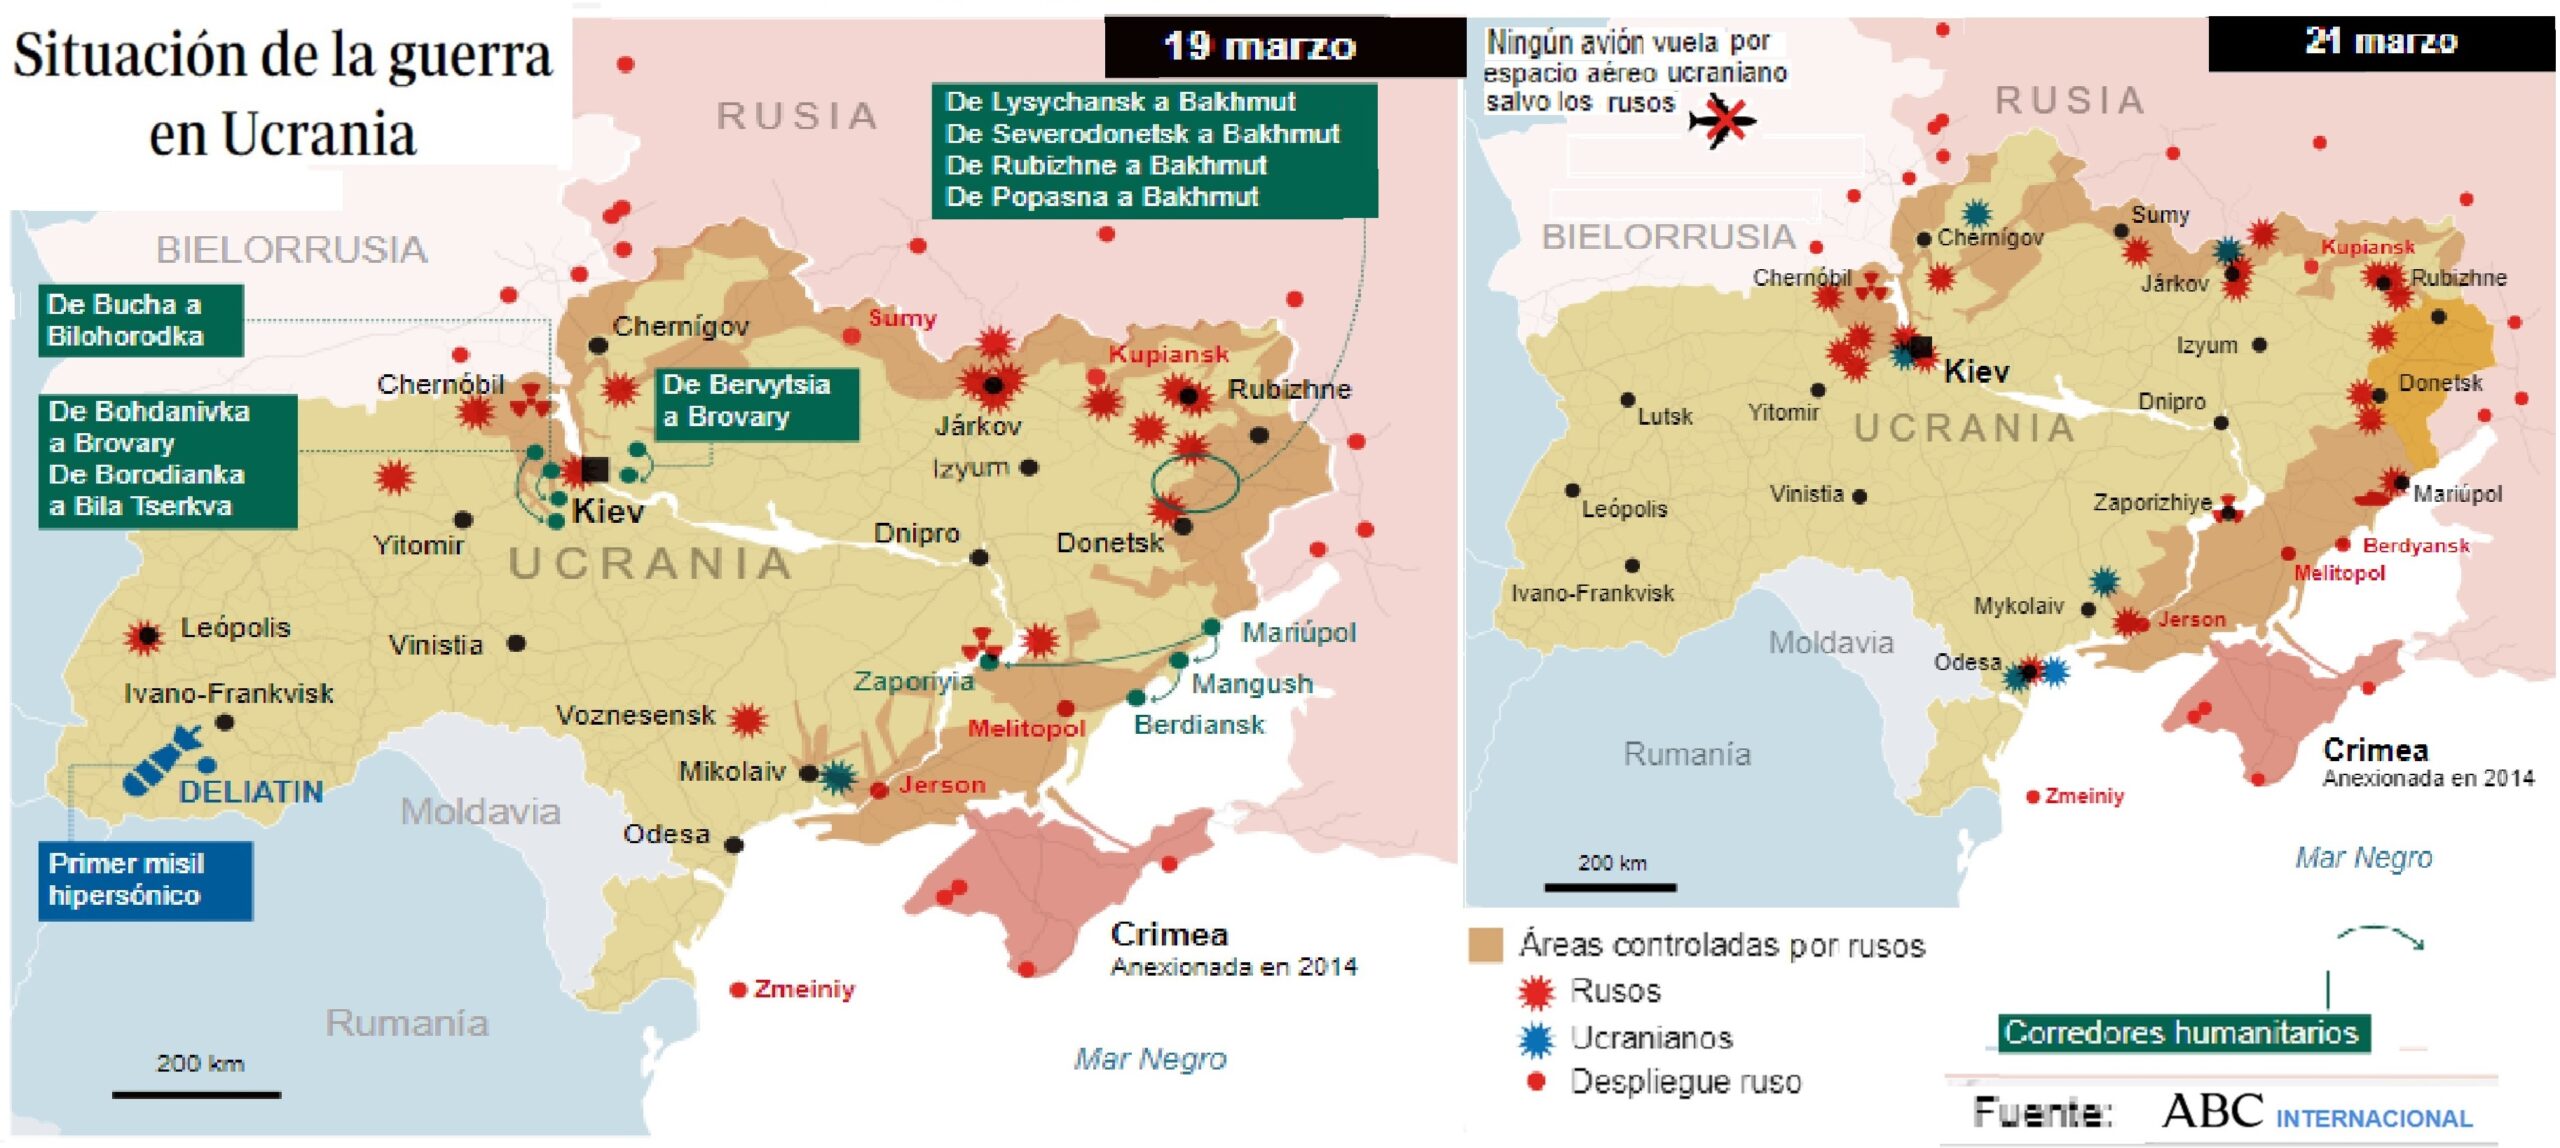 ucrania-v-ctima-del-expansionismo-ruso-eje21